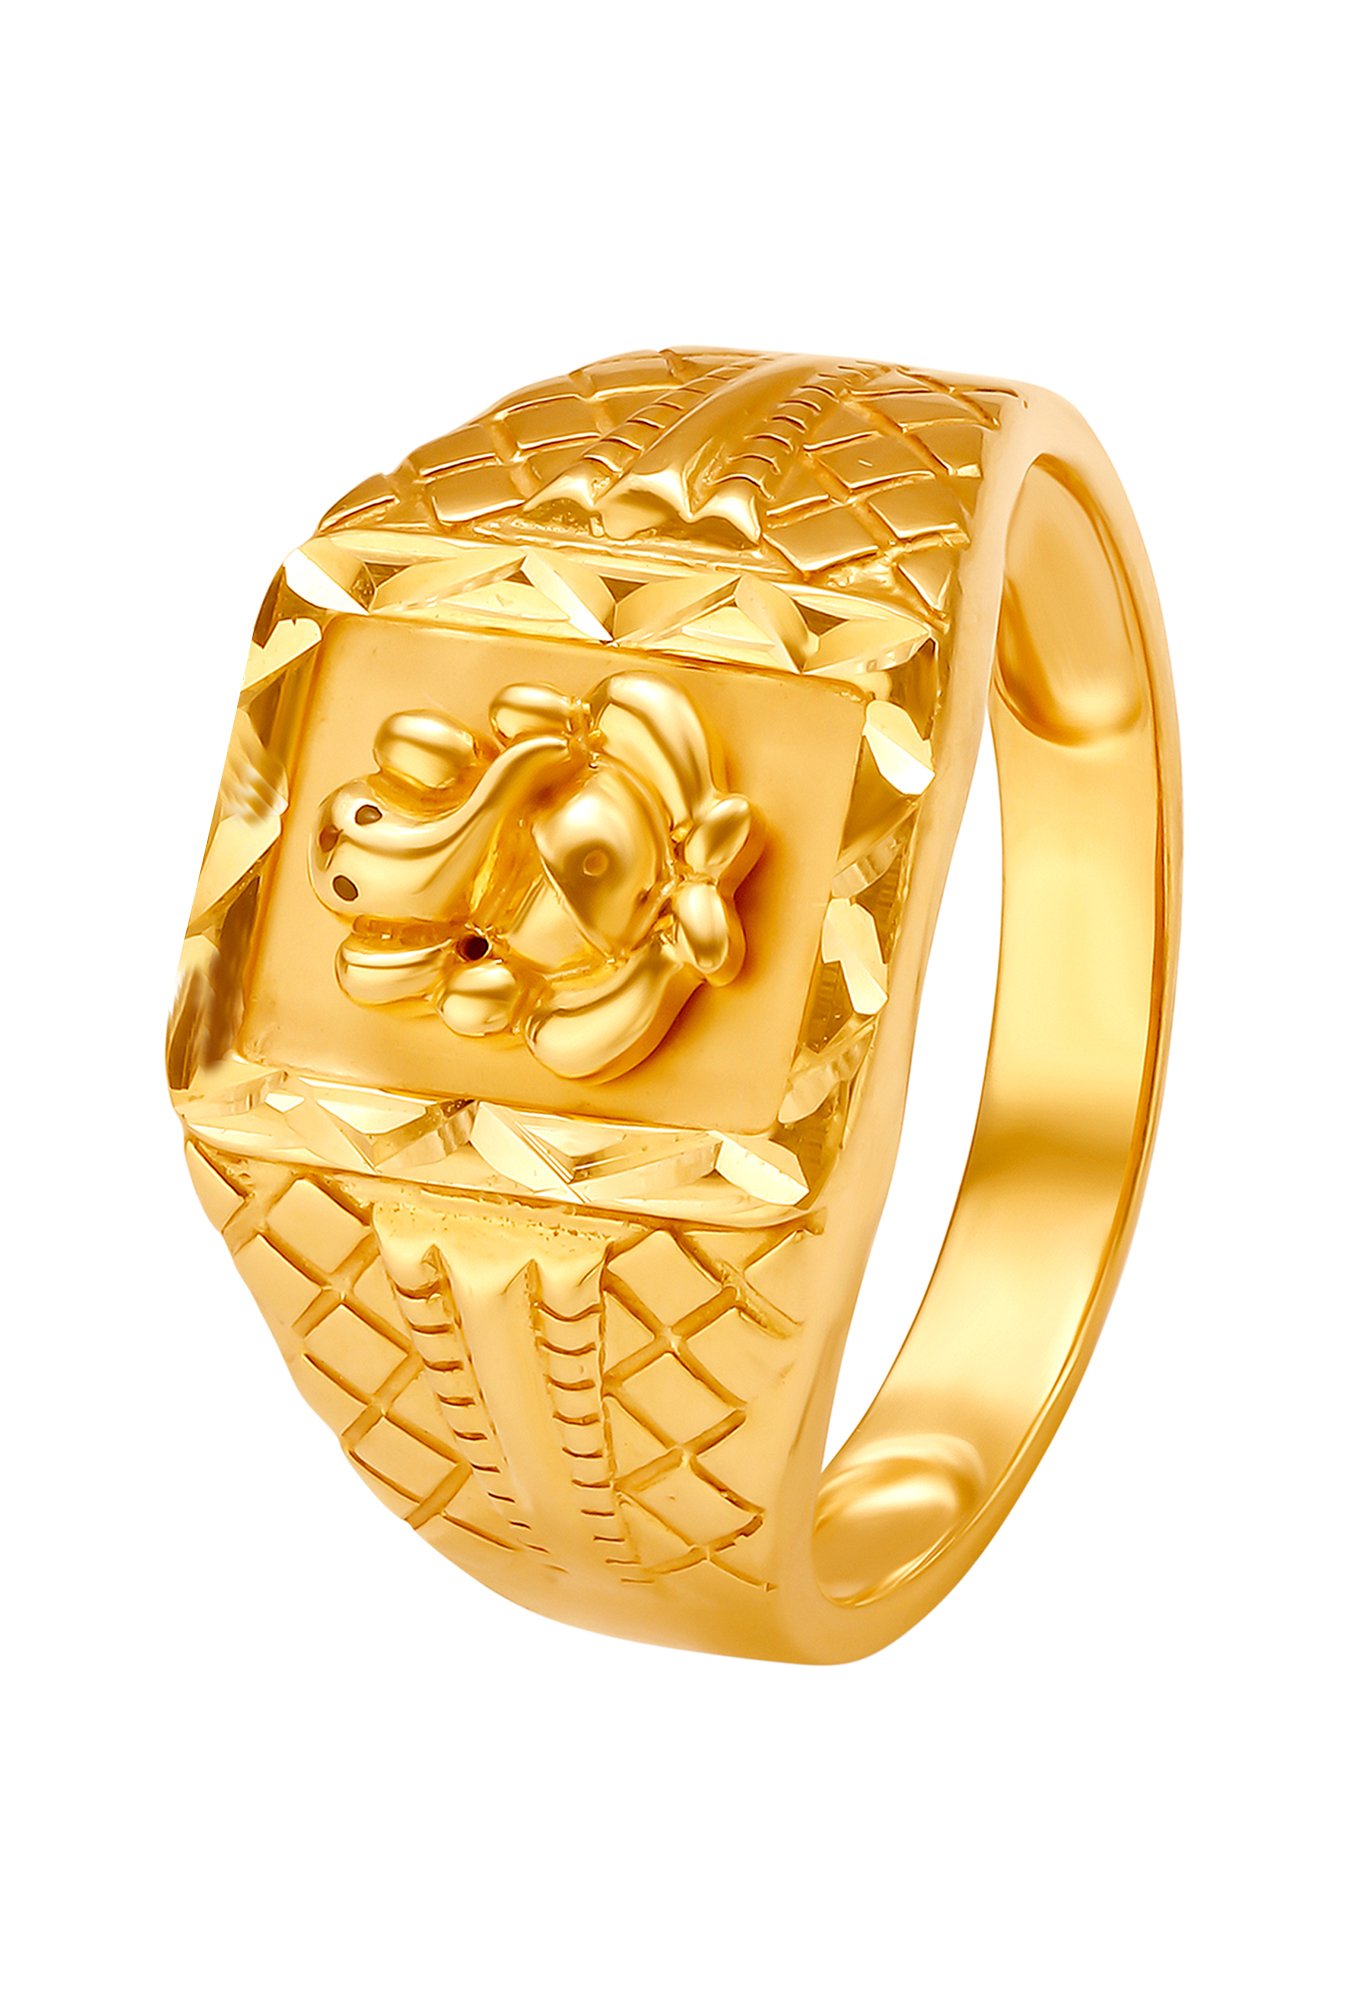 Striking Gold Ring for Men